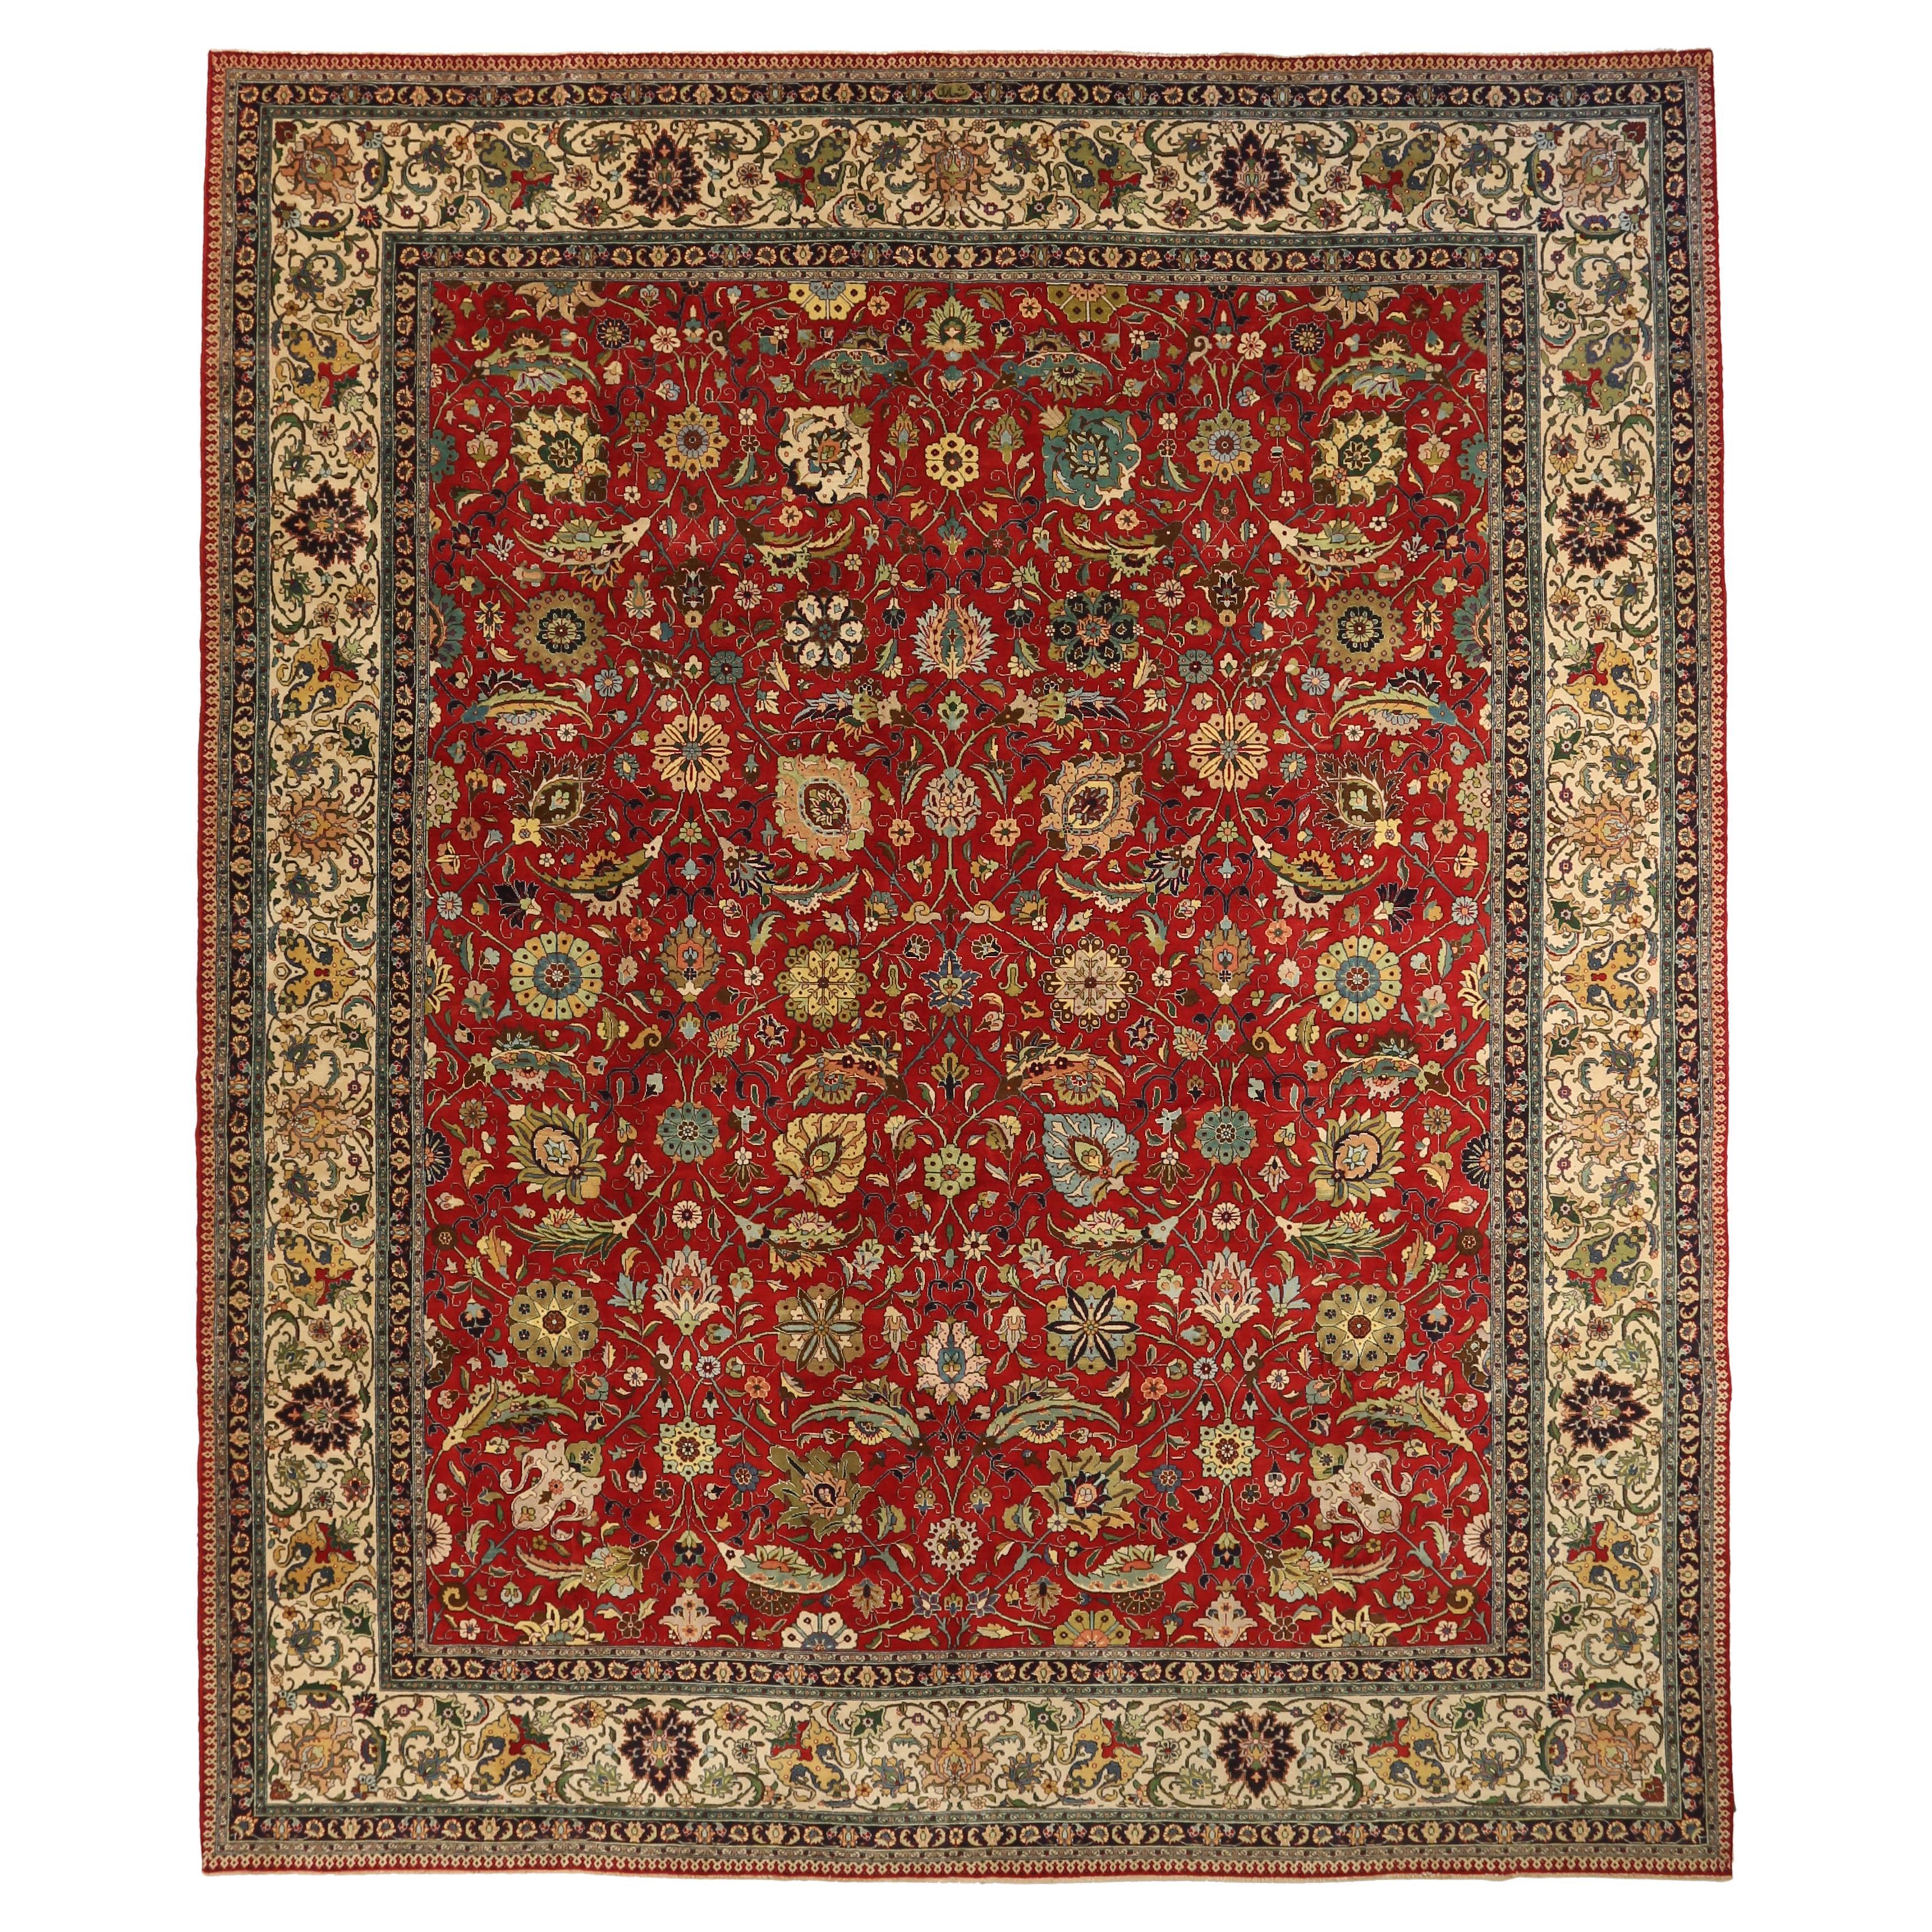 Antiker handgefertigter persischer Teppich in Übergröße im Tabriz-Design 